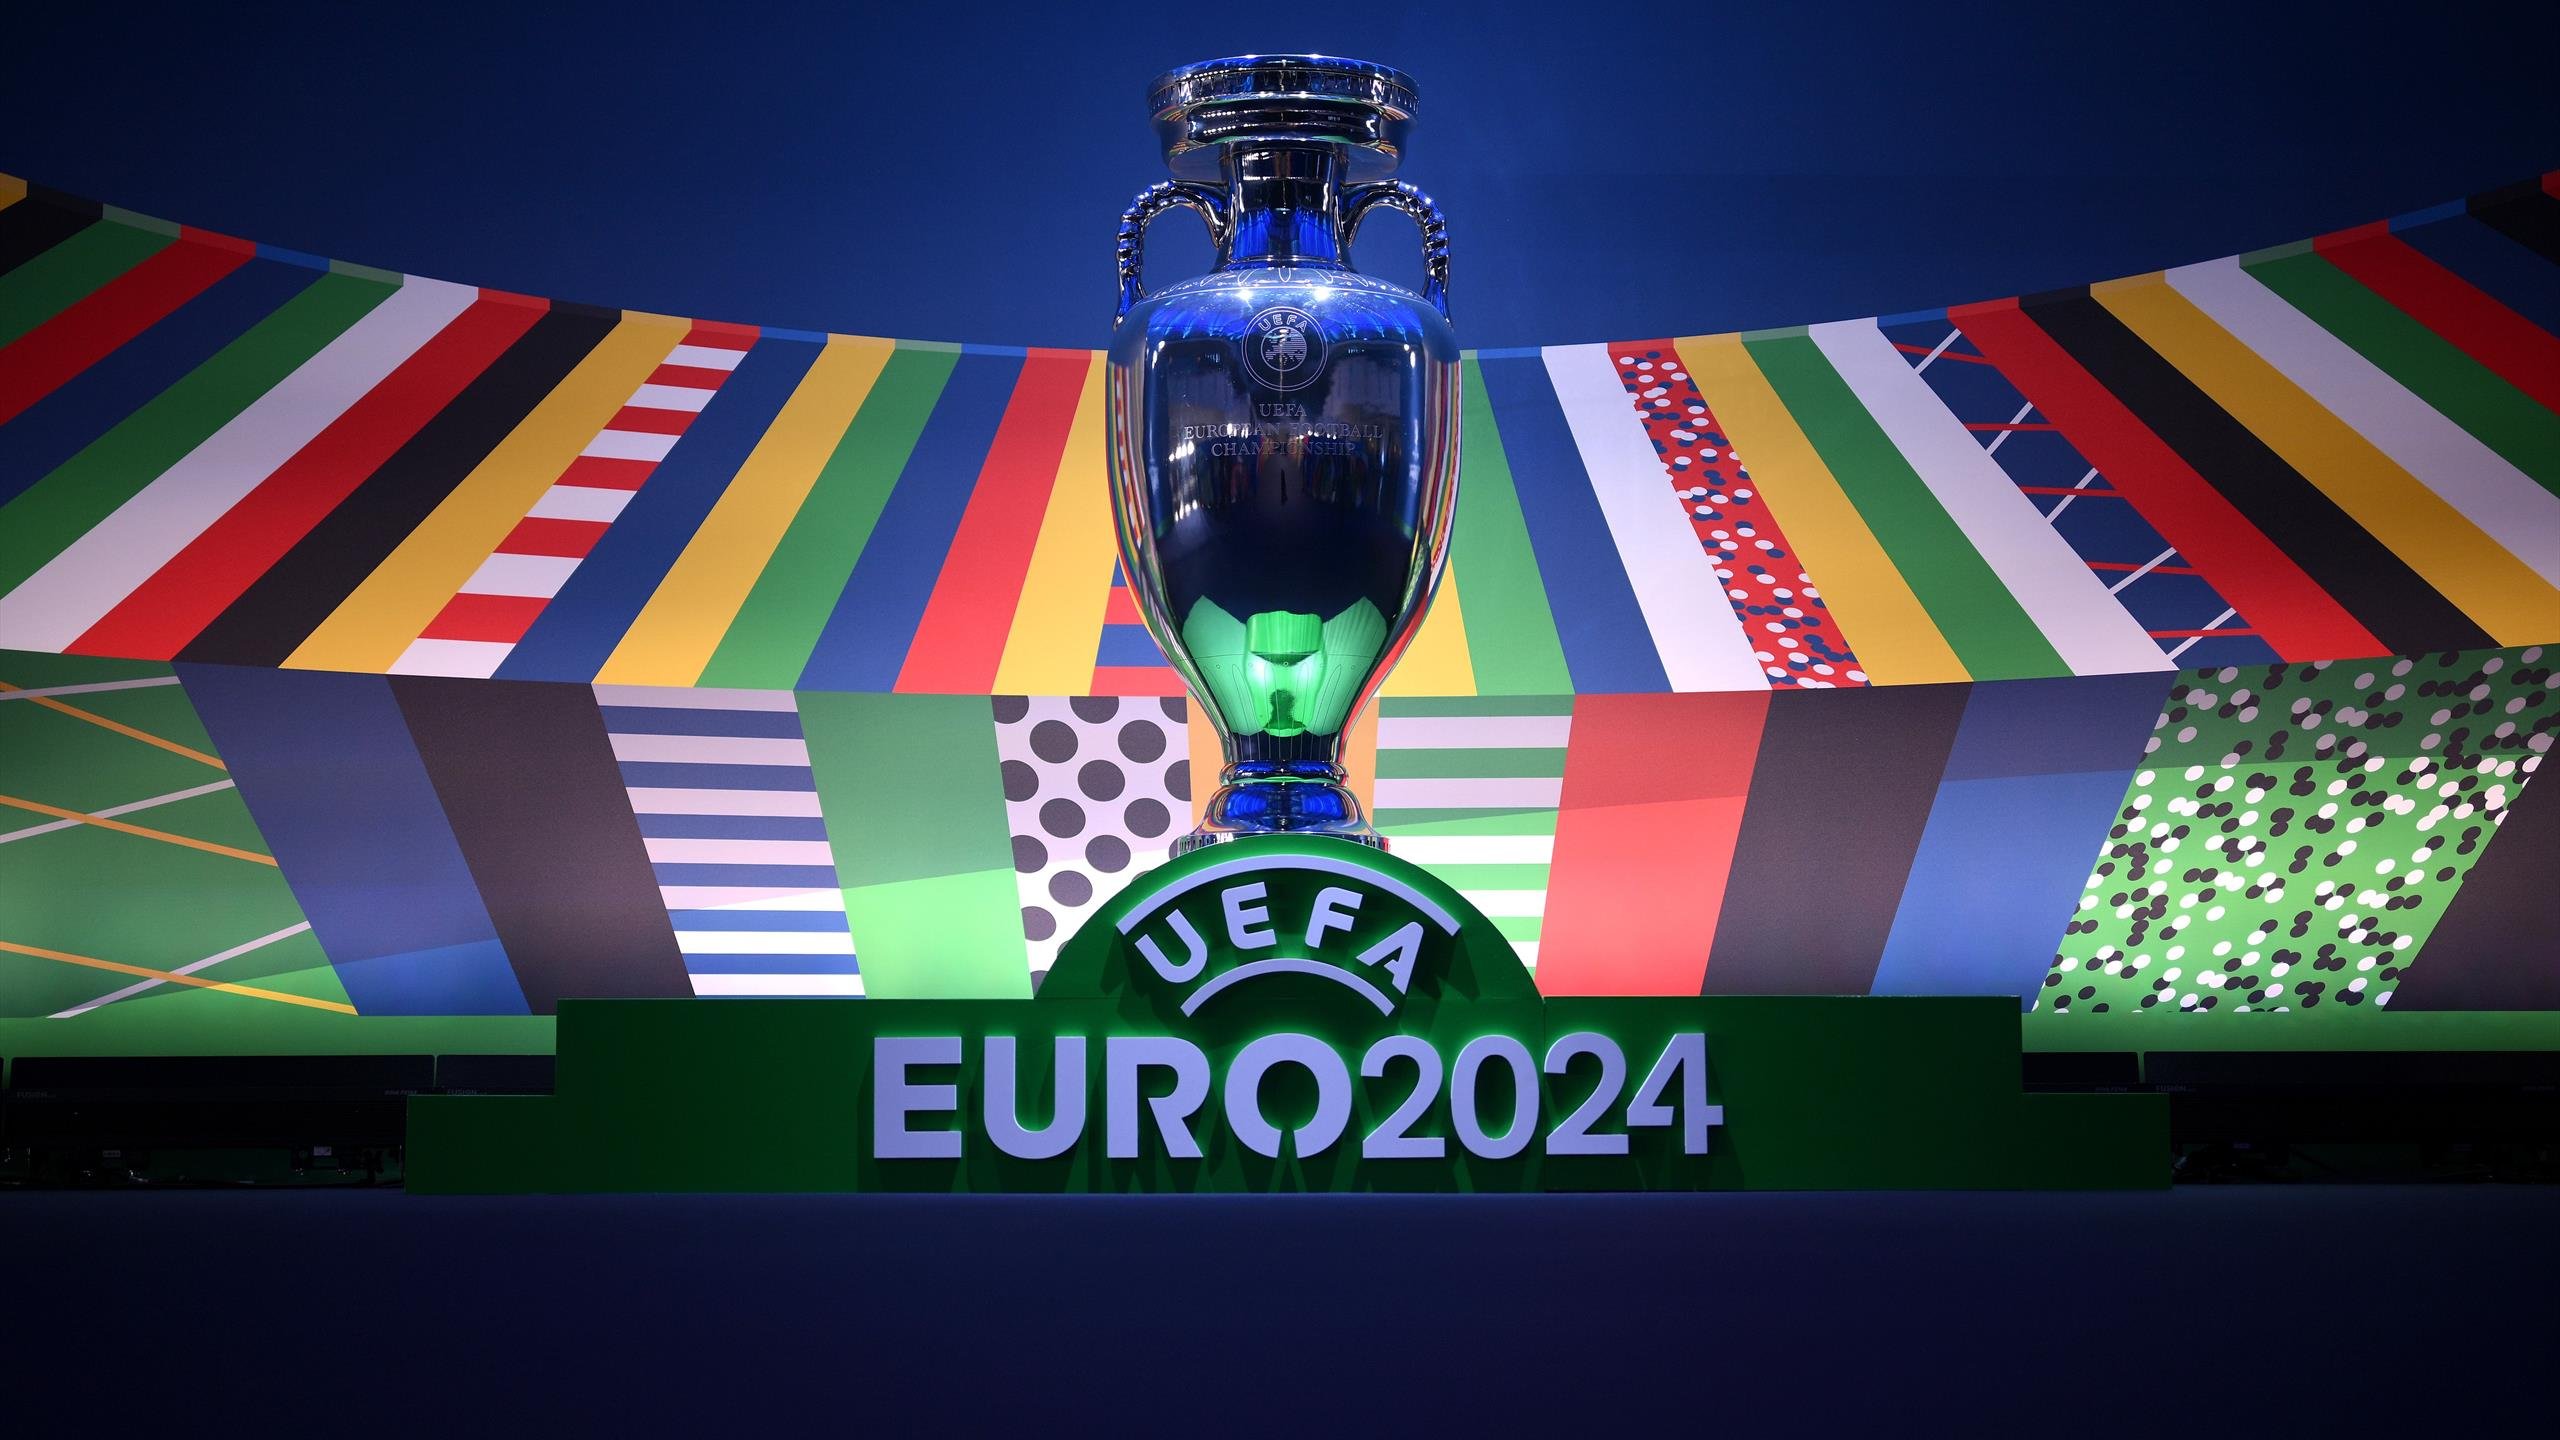  UEFA anunţă că a primit deja peste 20 milioane cereri de bilete pentru EURO 2024